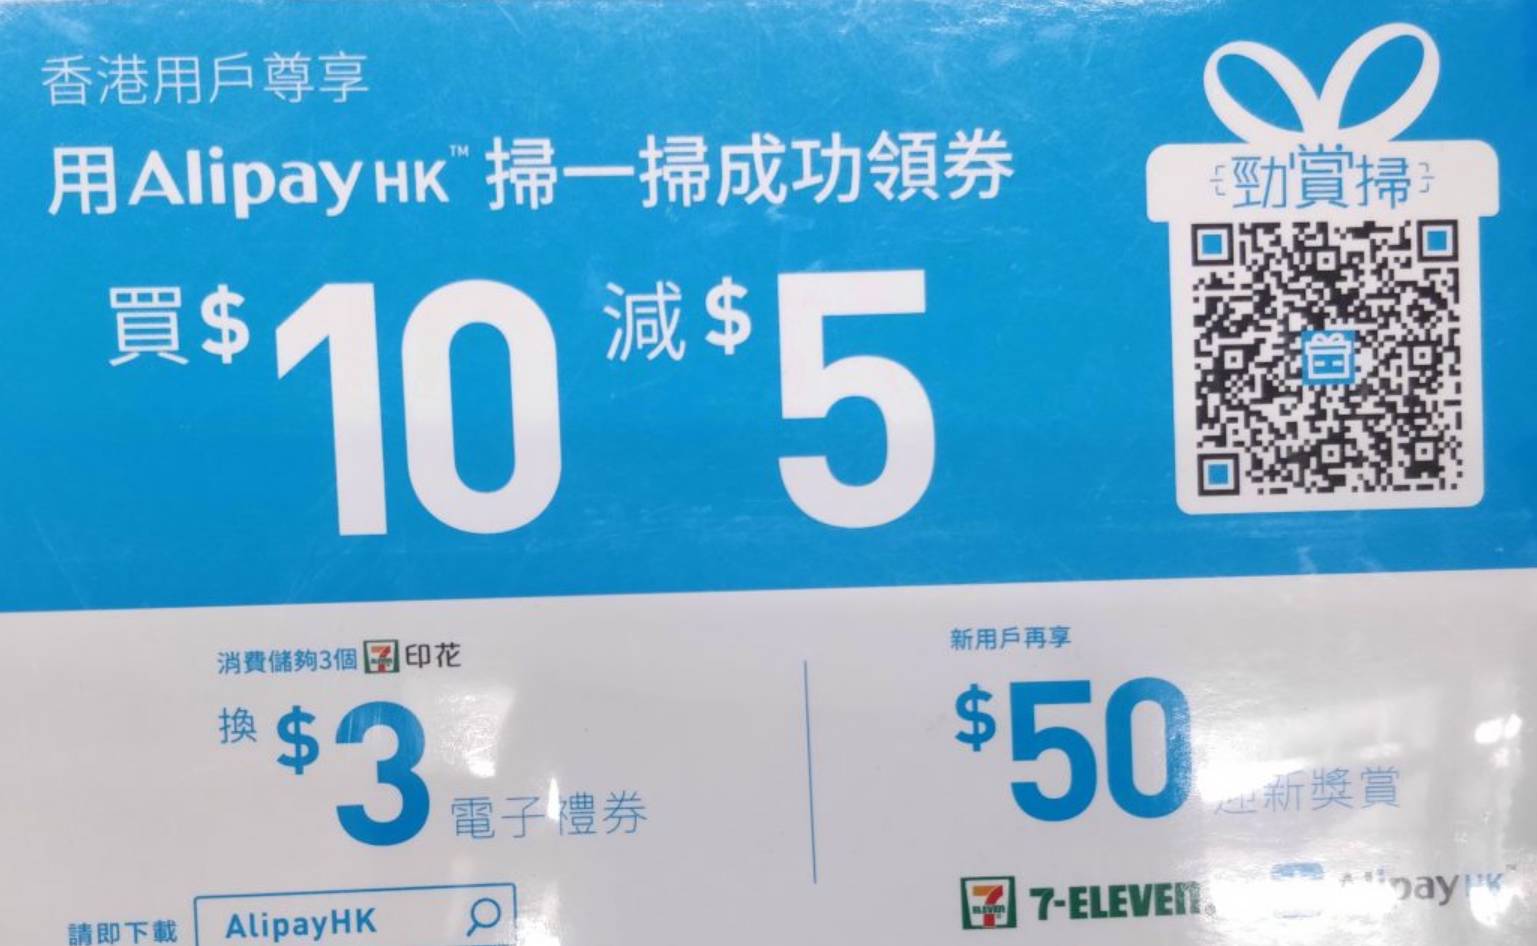 Alipay HK 支付寶「勁賞掃」送2 張 優惠券(至18年11月30日)圖片1